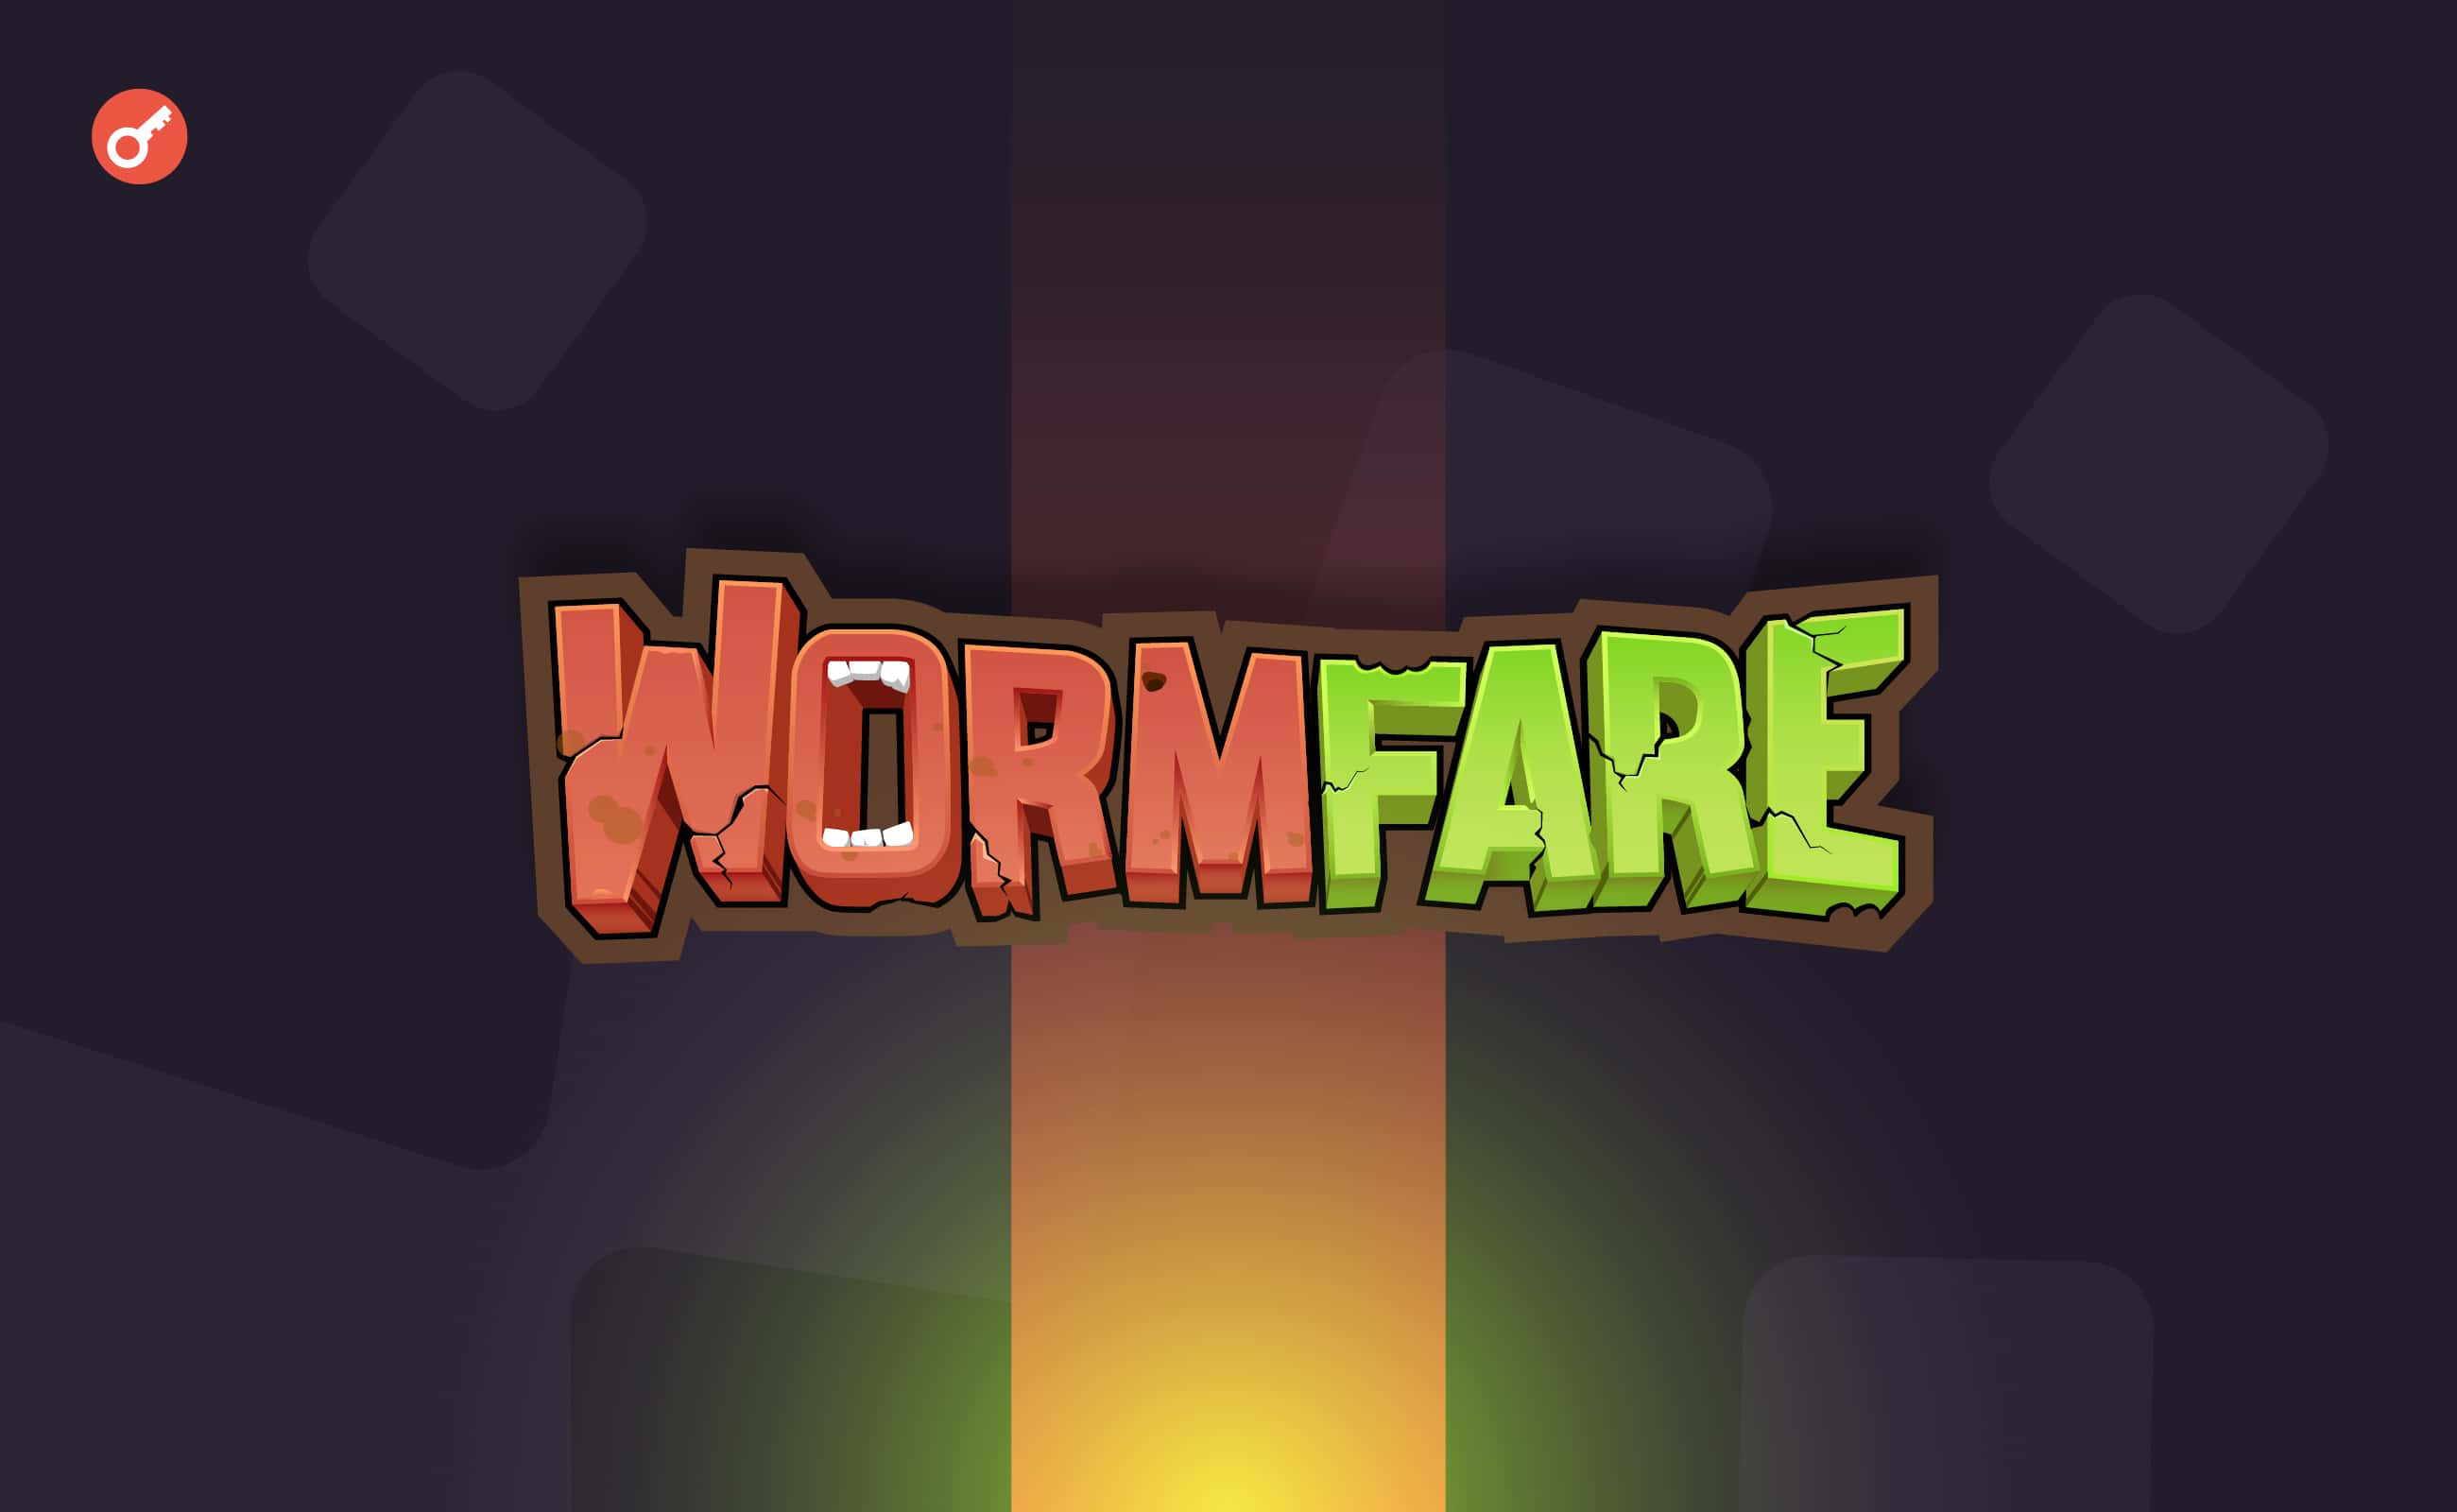 Wormfare оголосив про запуск винагороджуваної активності. Головний колаж новини.